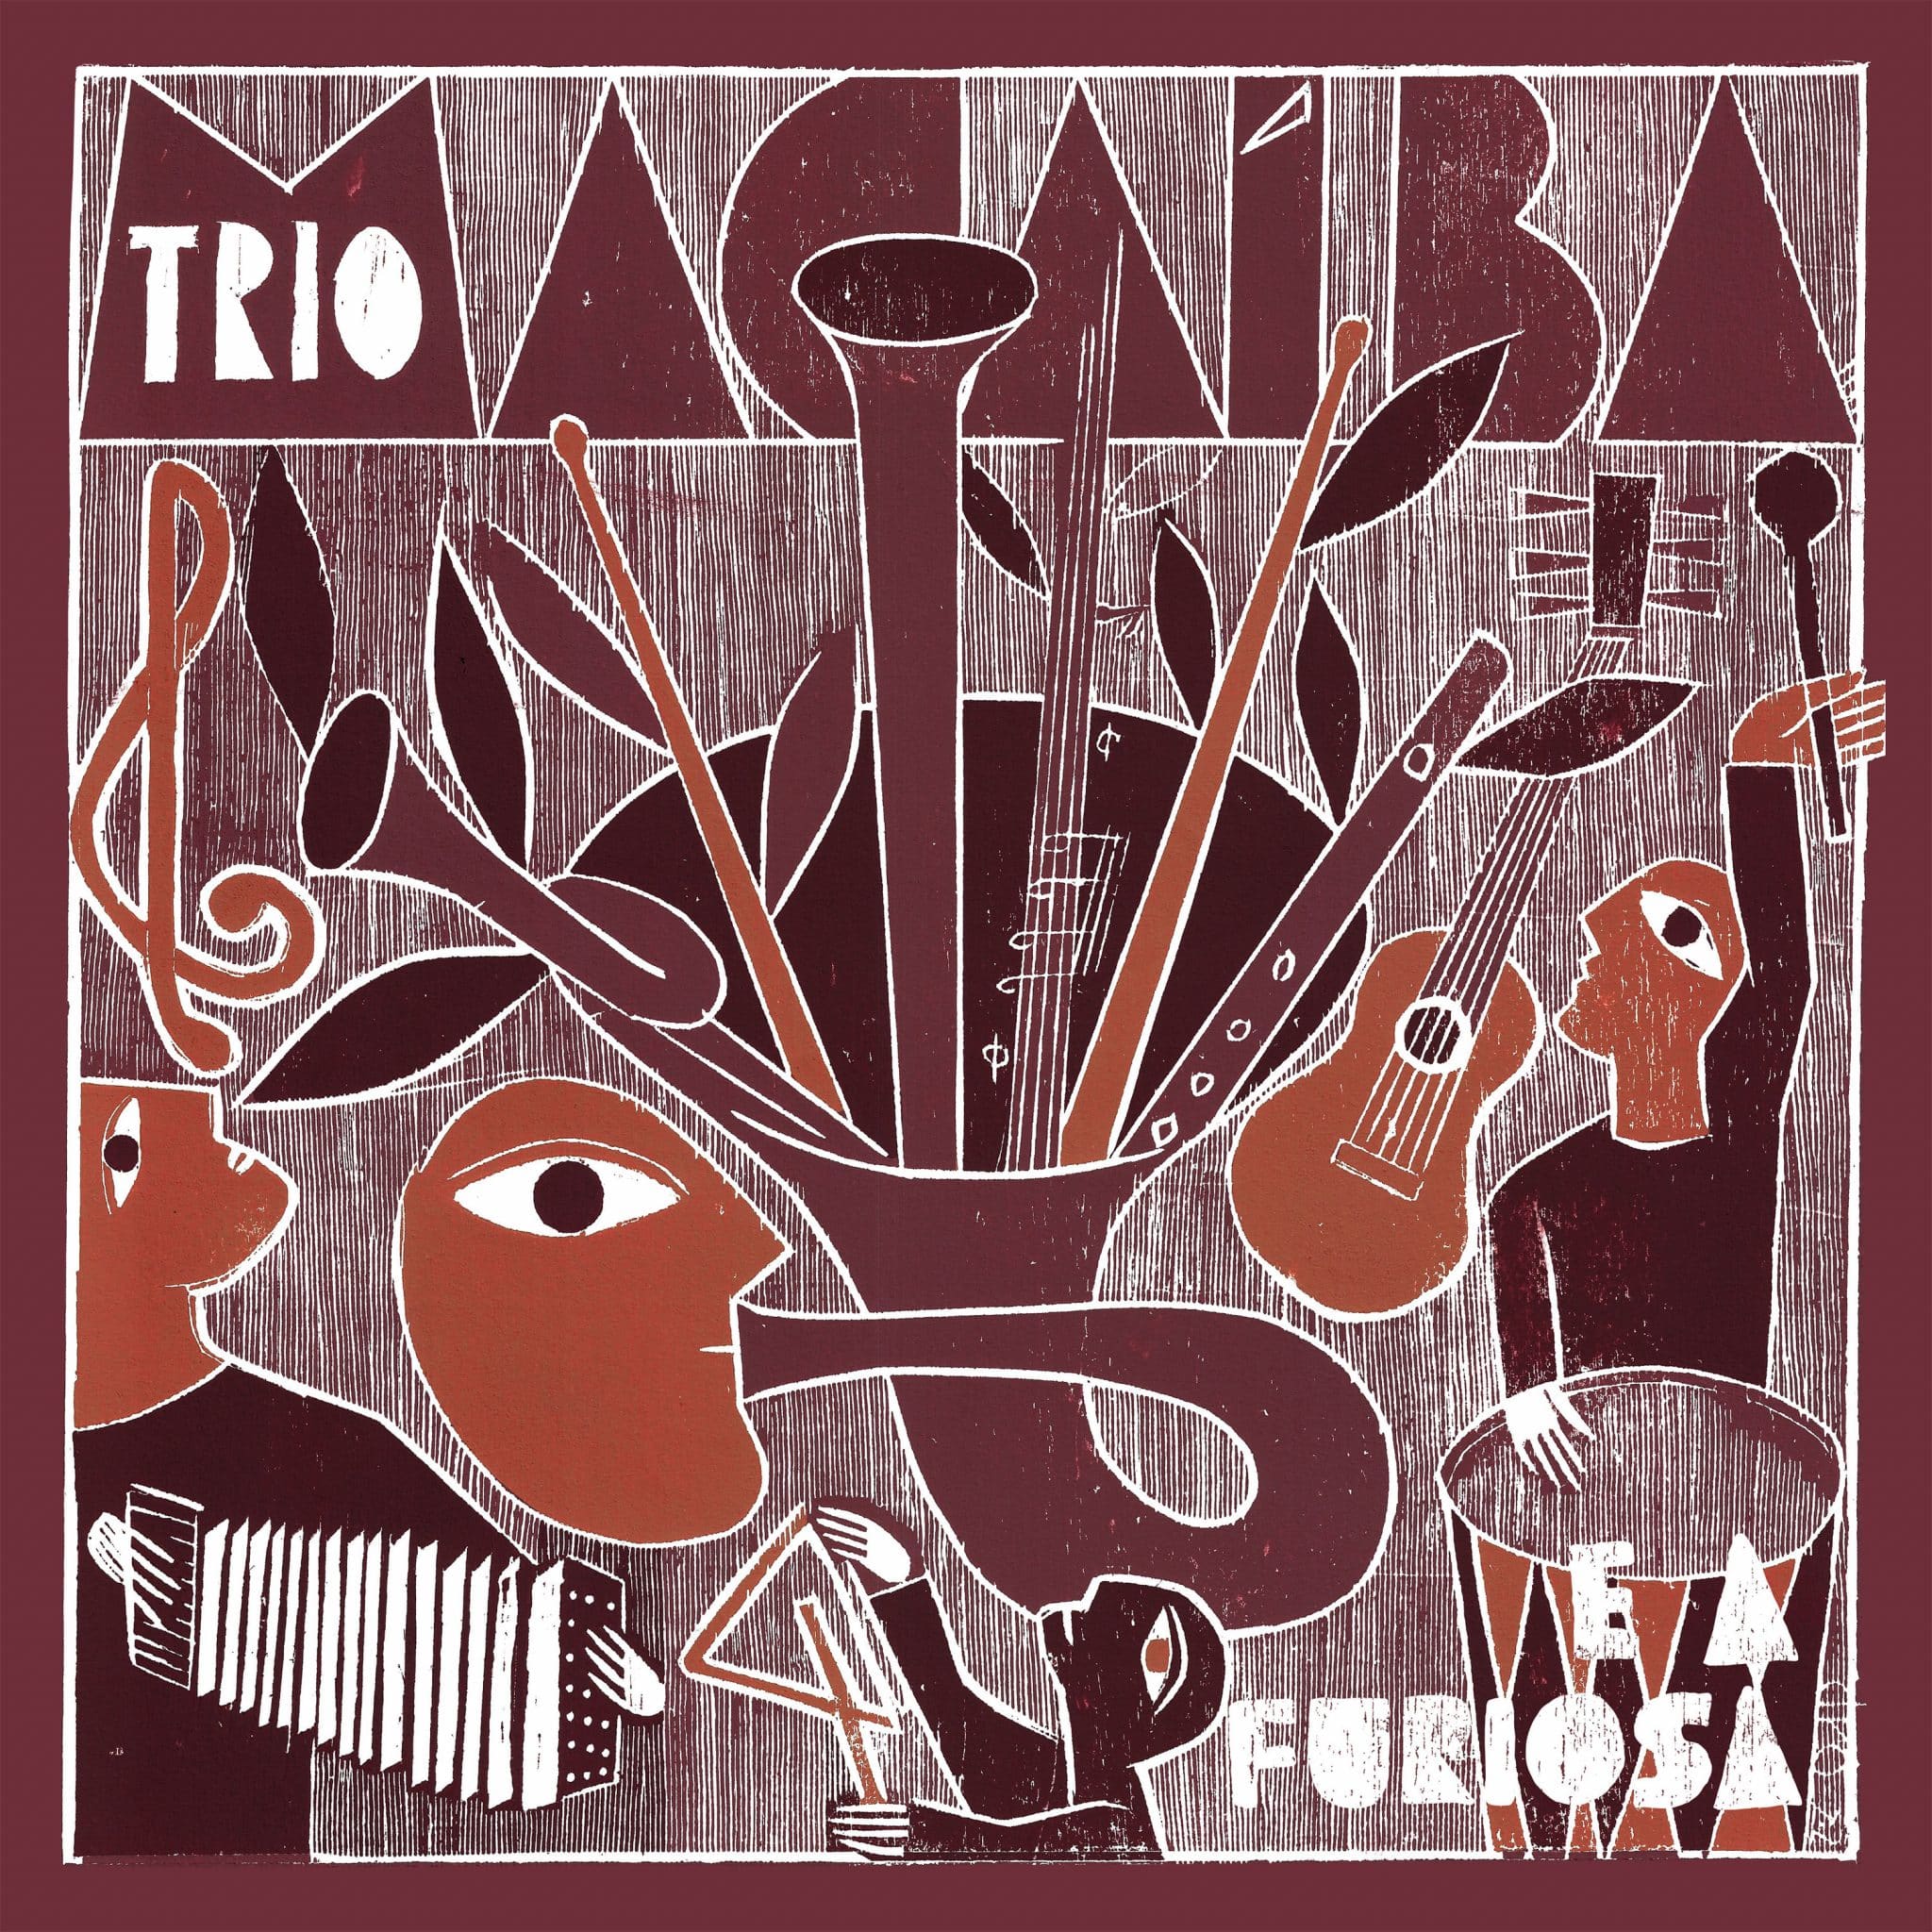 revistaprosaversoearte.com - Trio Macaíba lança álbum 'Trio Macaíba e a Furiosa'